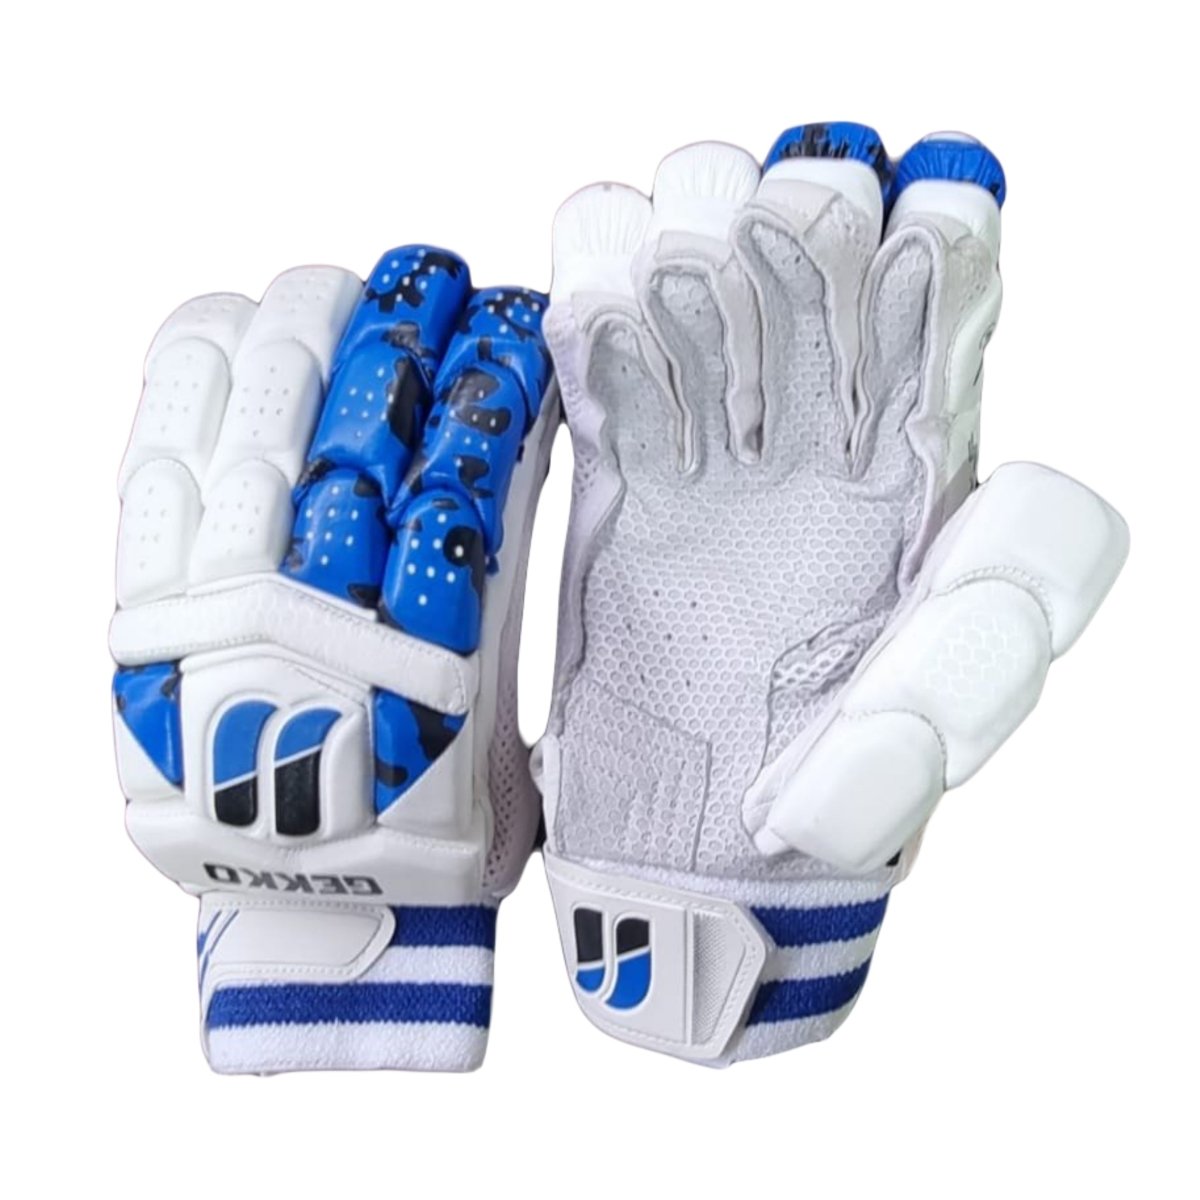 JJ Sports Gekko 1.0 Cricket Batting Gloves